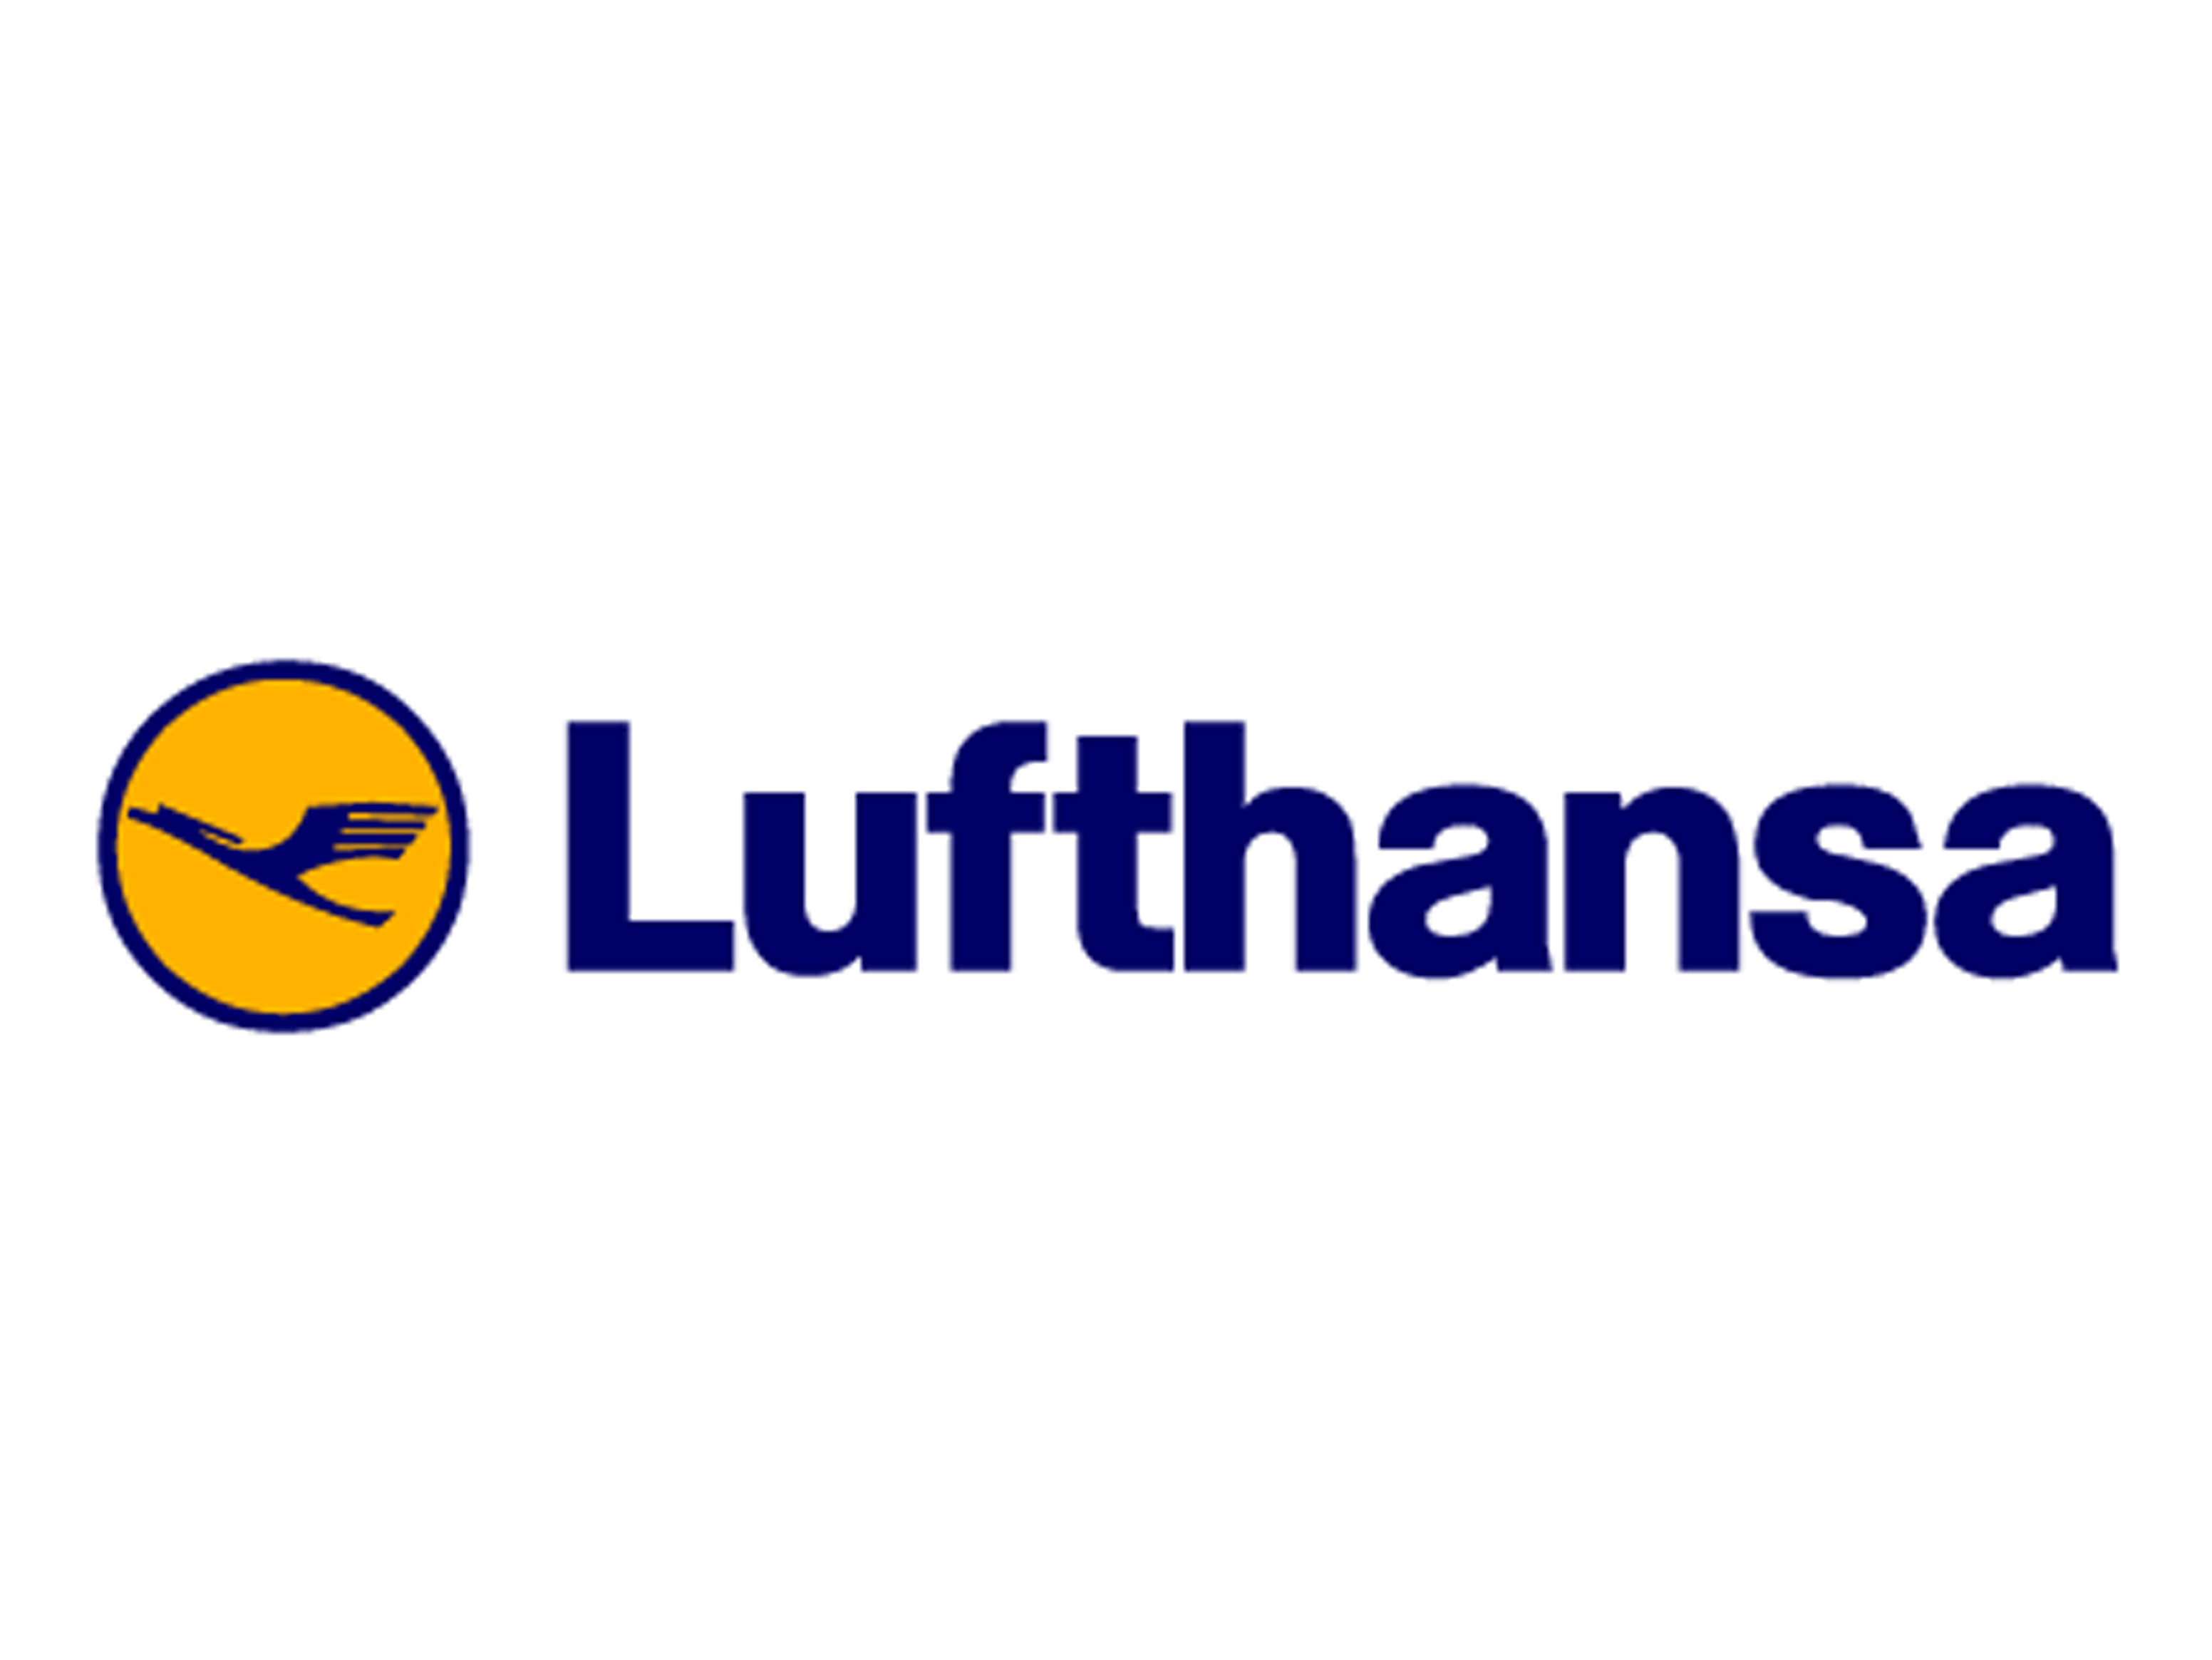 Lufthansa Logo - Lufthansa (German airline) | Business | Pinterest | Airline logo ...